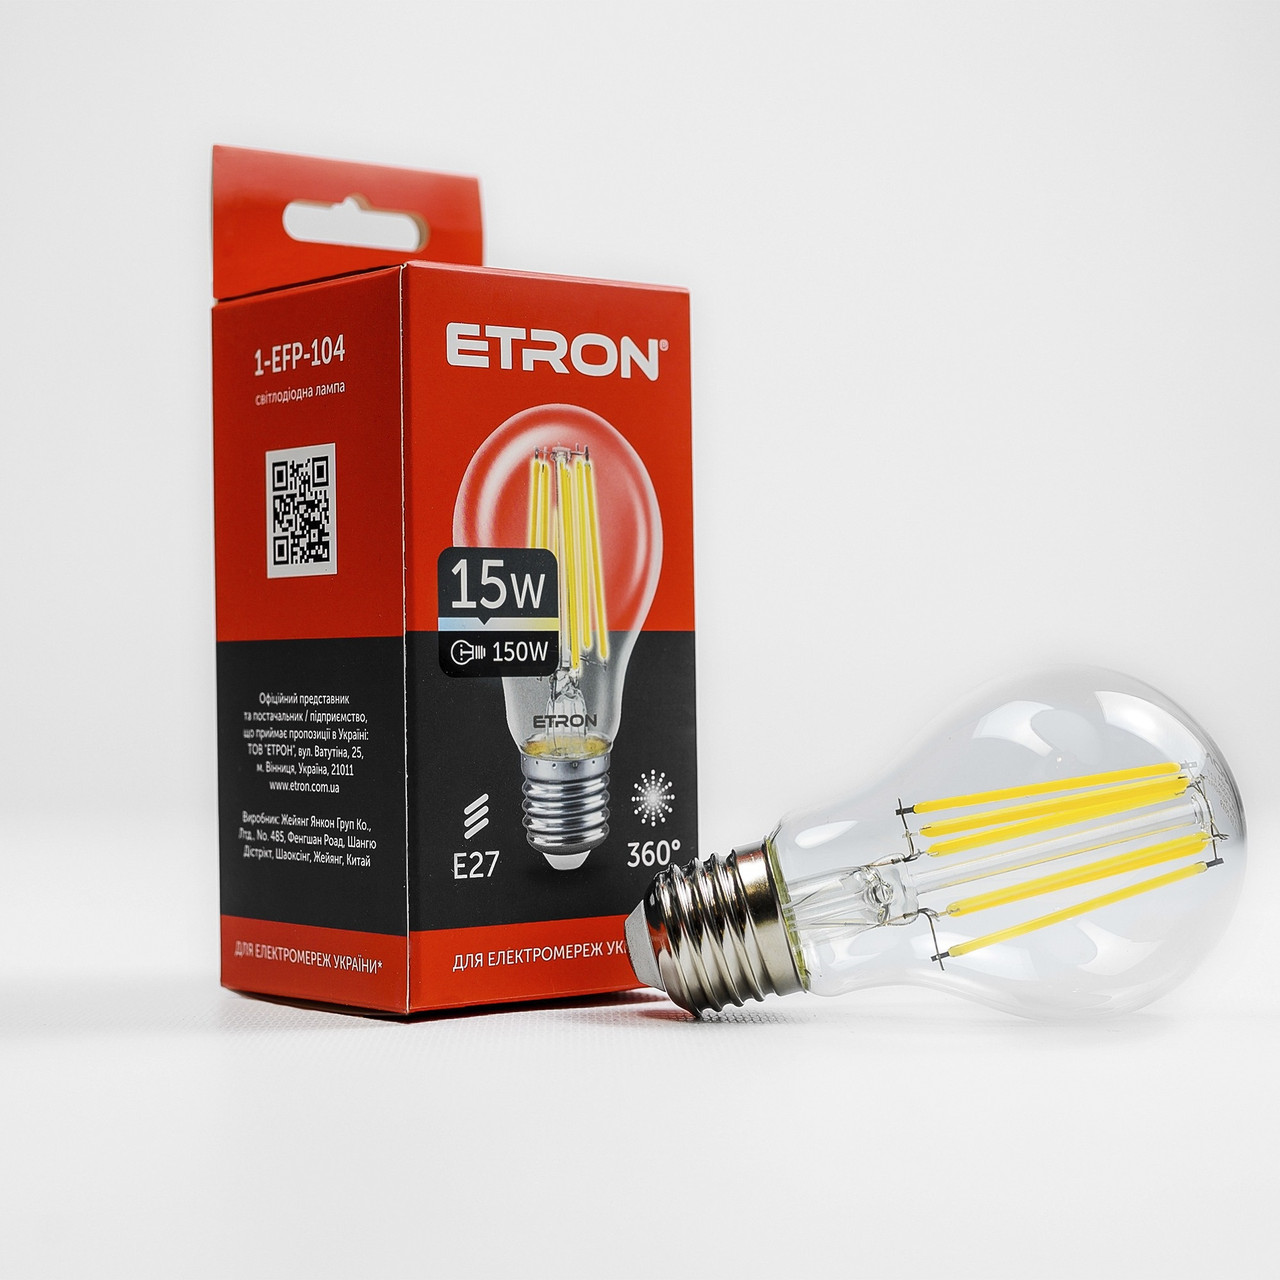 Лампа "Etron Filament Power" прозоре скло LED 1-EFP-104  A60 15Вт 4200K Е27(10)